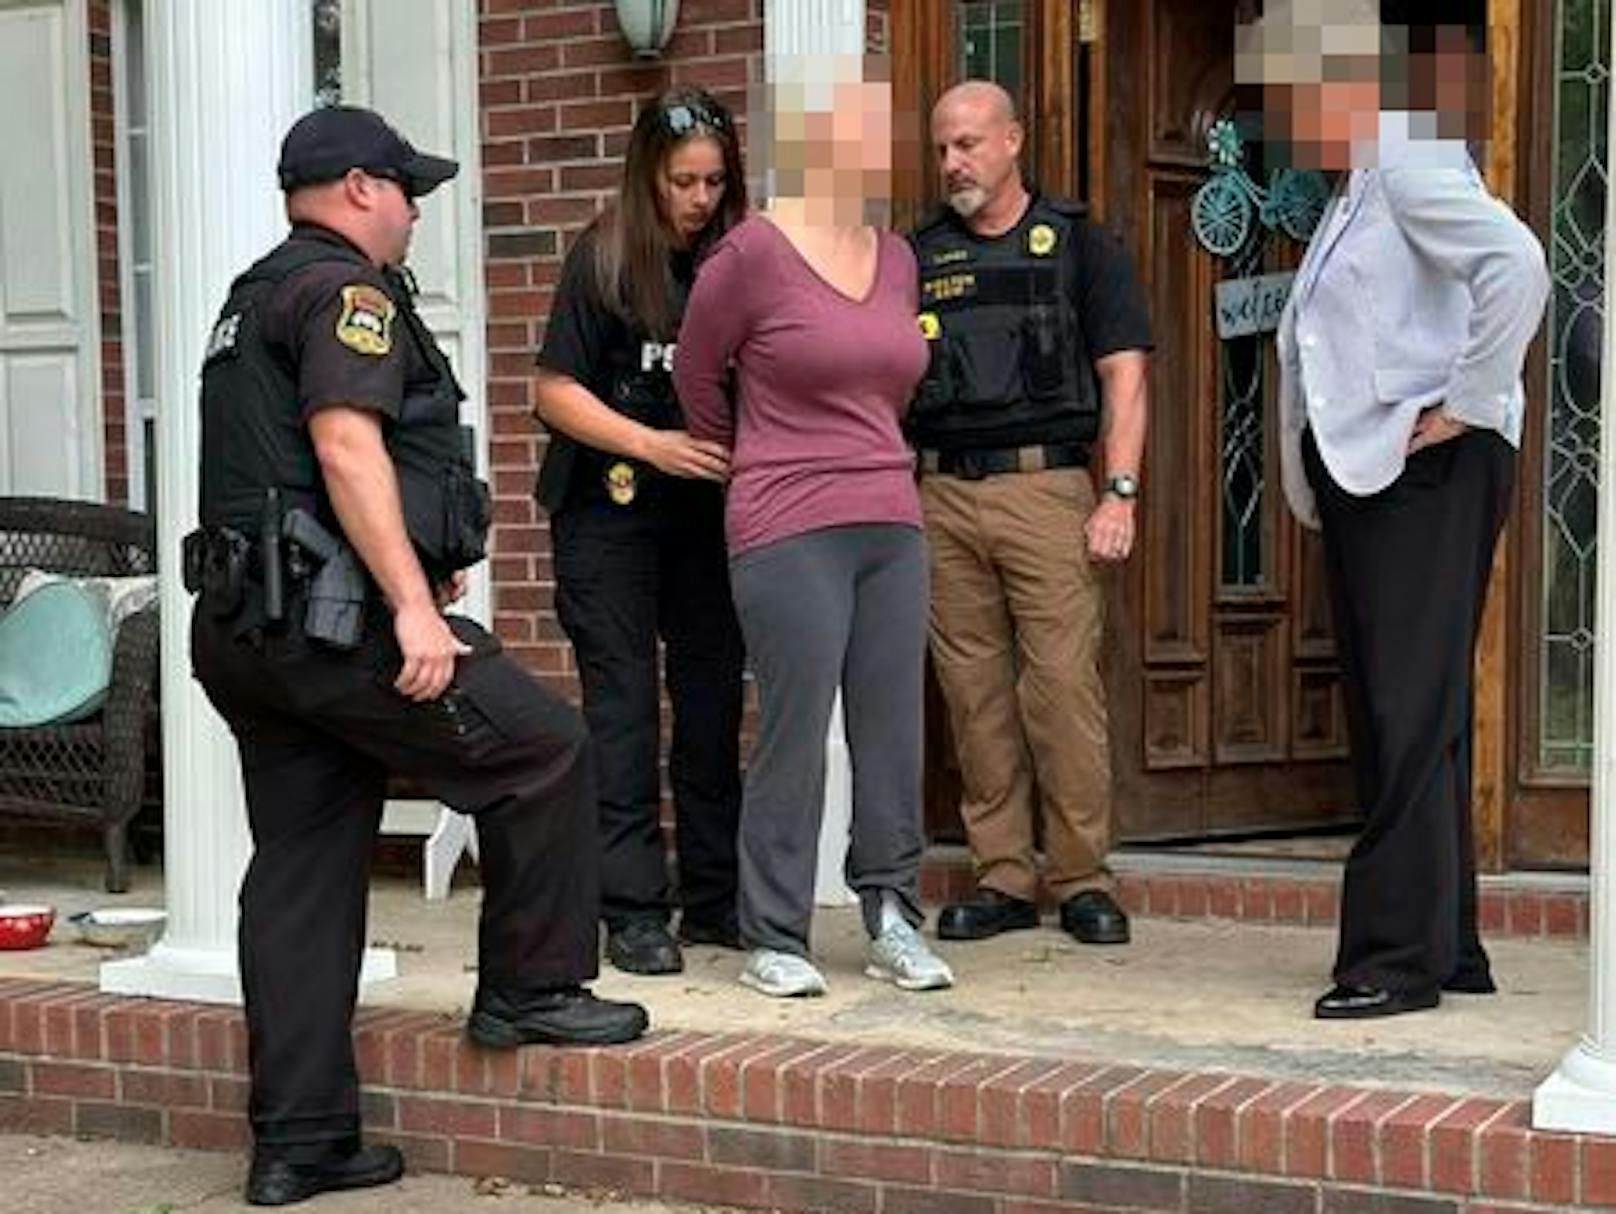 Bilder der Verhaftung: Die US-Lehrerin Alissa M. (38) aus Covington, Tennessee, soll einen zwölf Jahre alten Bub vergewaltigt haben.